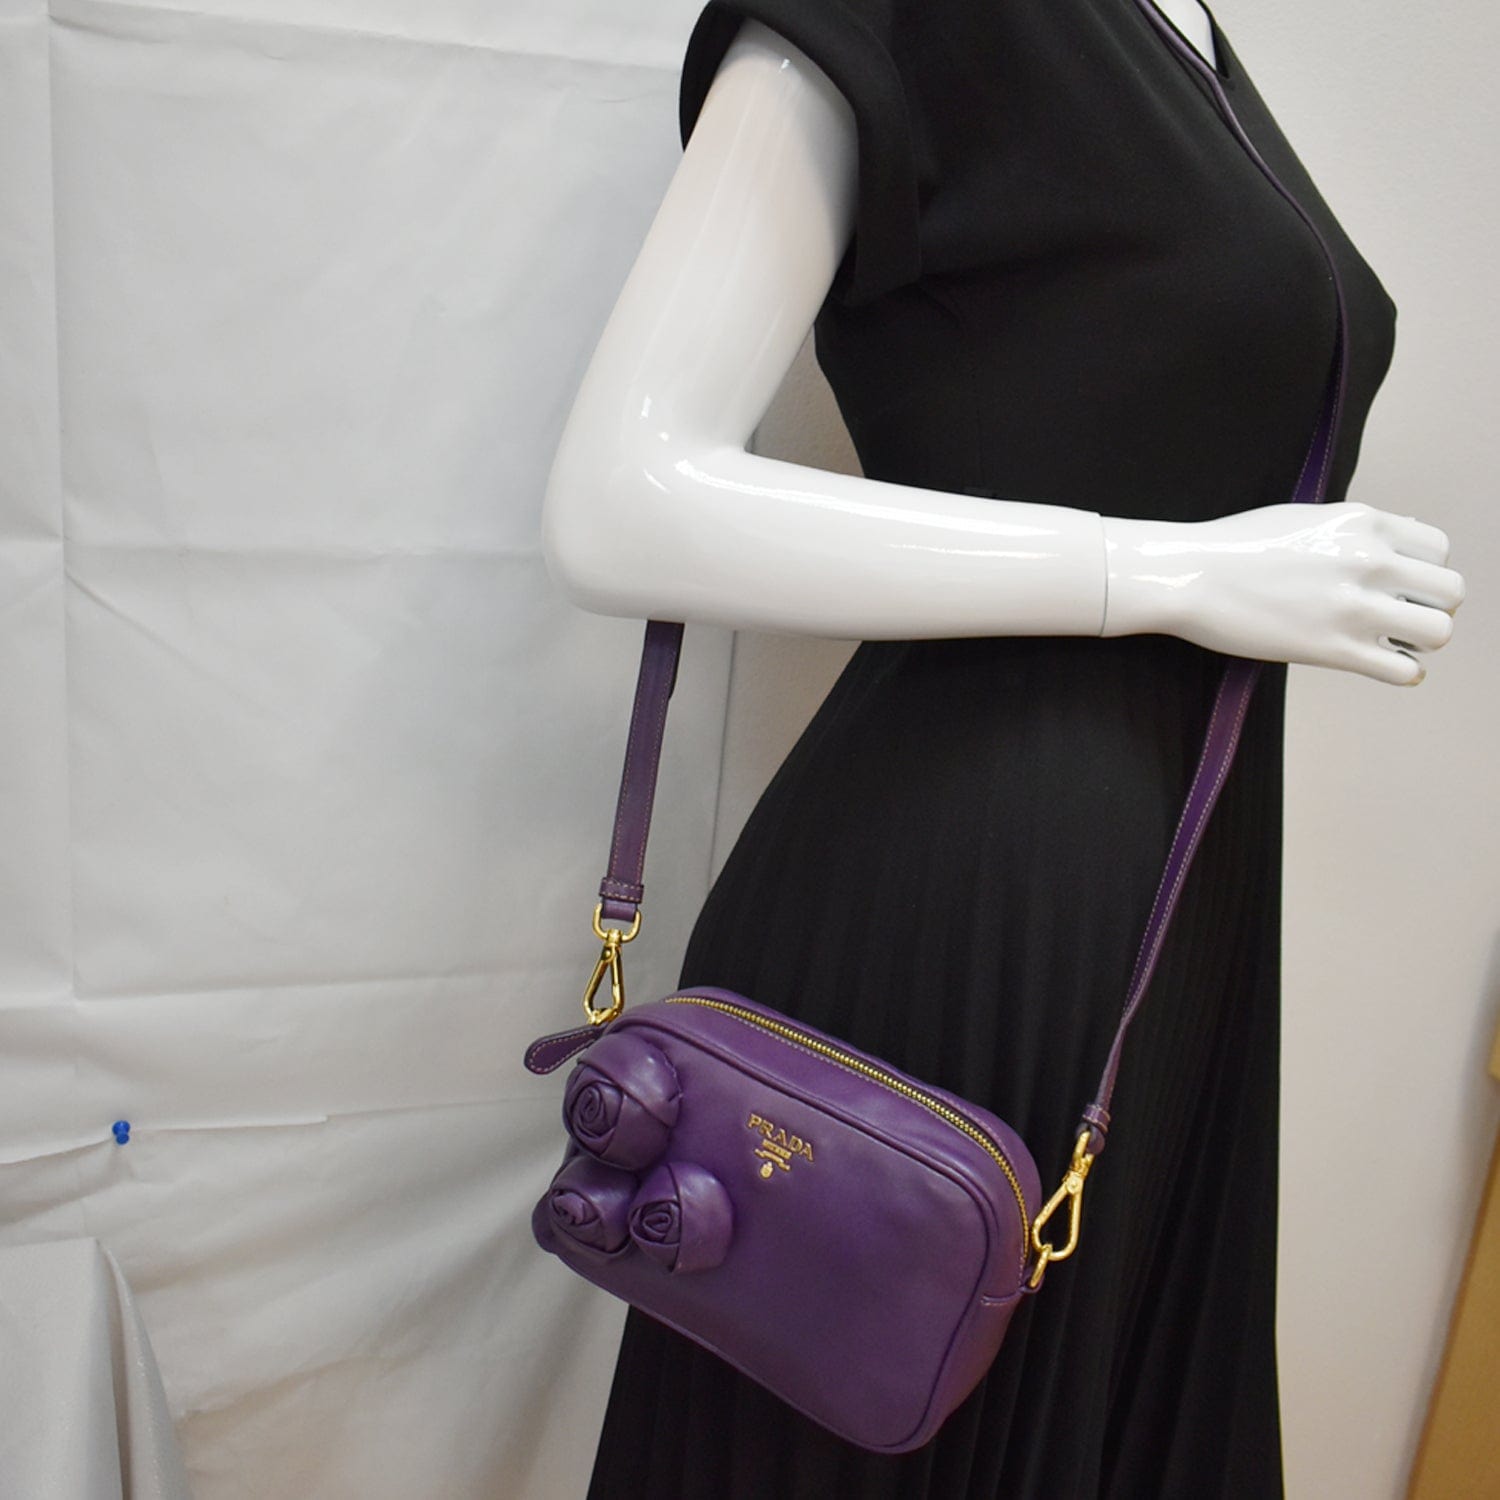 Prada Saffiano Lux Mini Camera Bag - Blue Crossbody Bags, Handbags